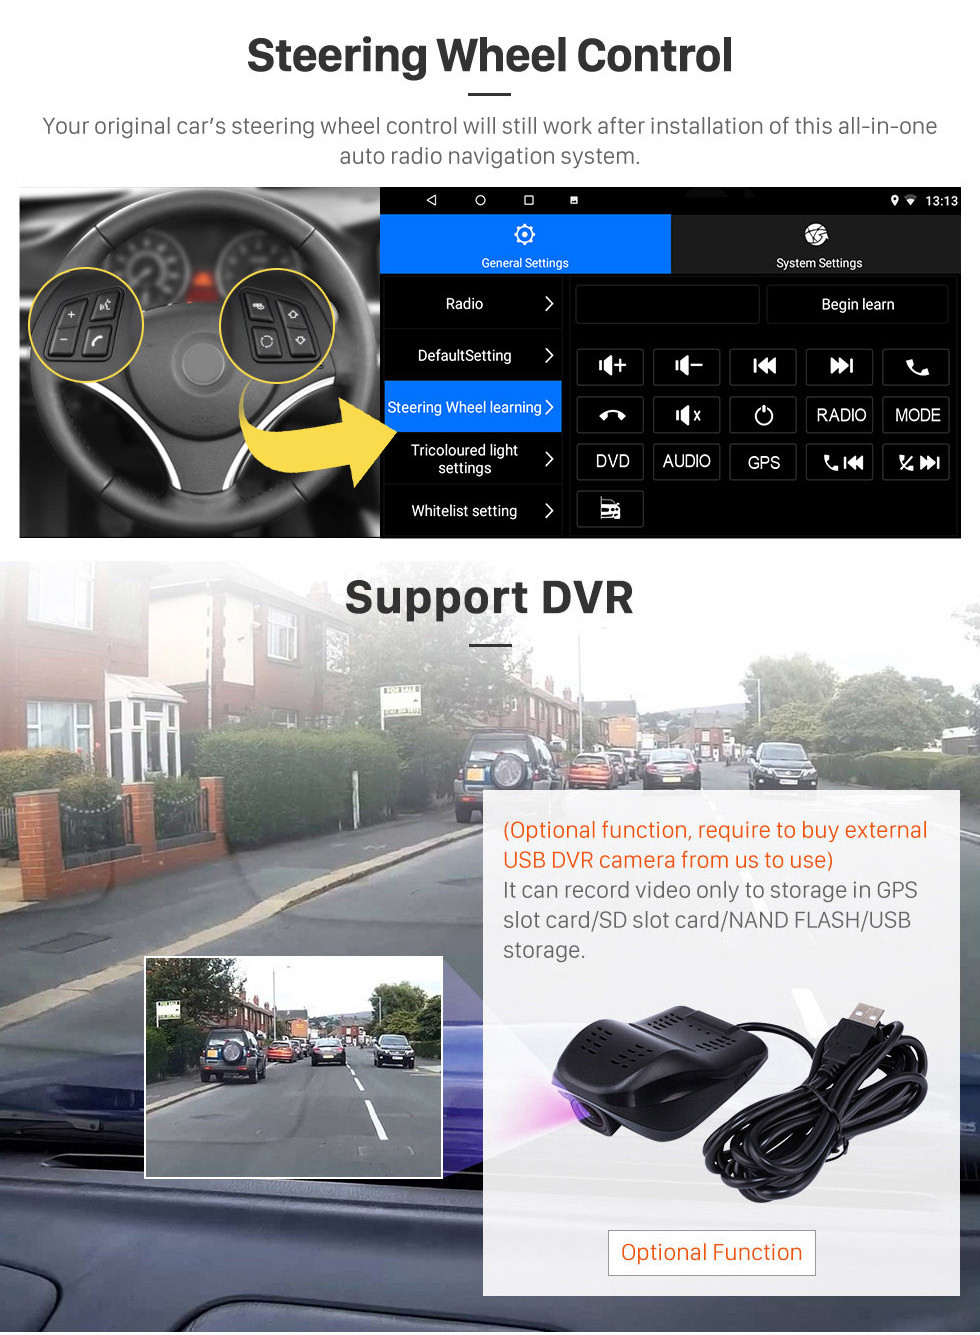 Seicane OEM 9 polegada Android 13.0 Rádio para 2001-2008 Peugeot 307 Bluetooth WI-FI HD Touchscreen Suporte de Navegação GPS Carplay DVR OBD Retrovisor câmera